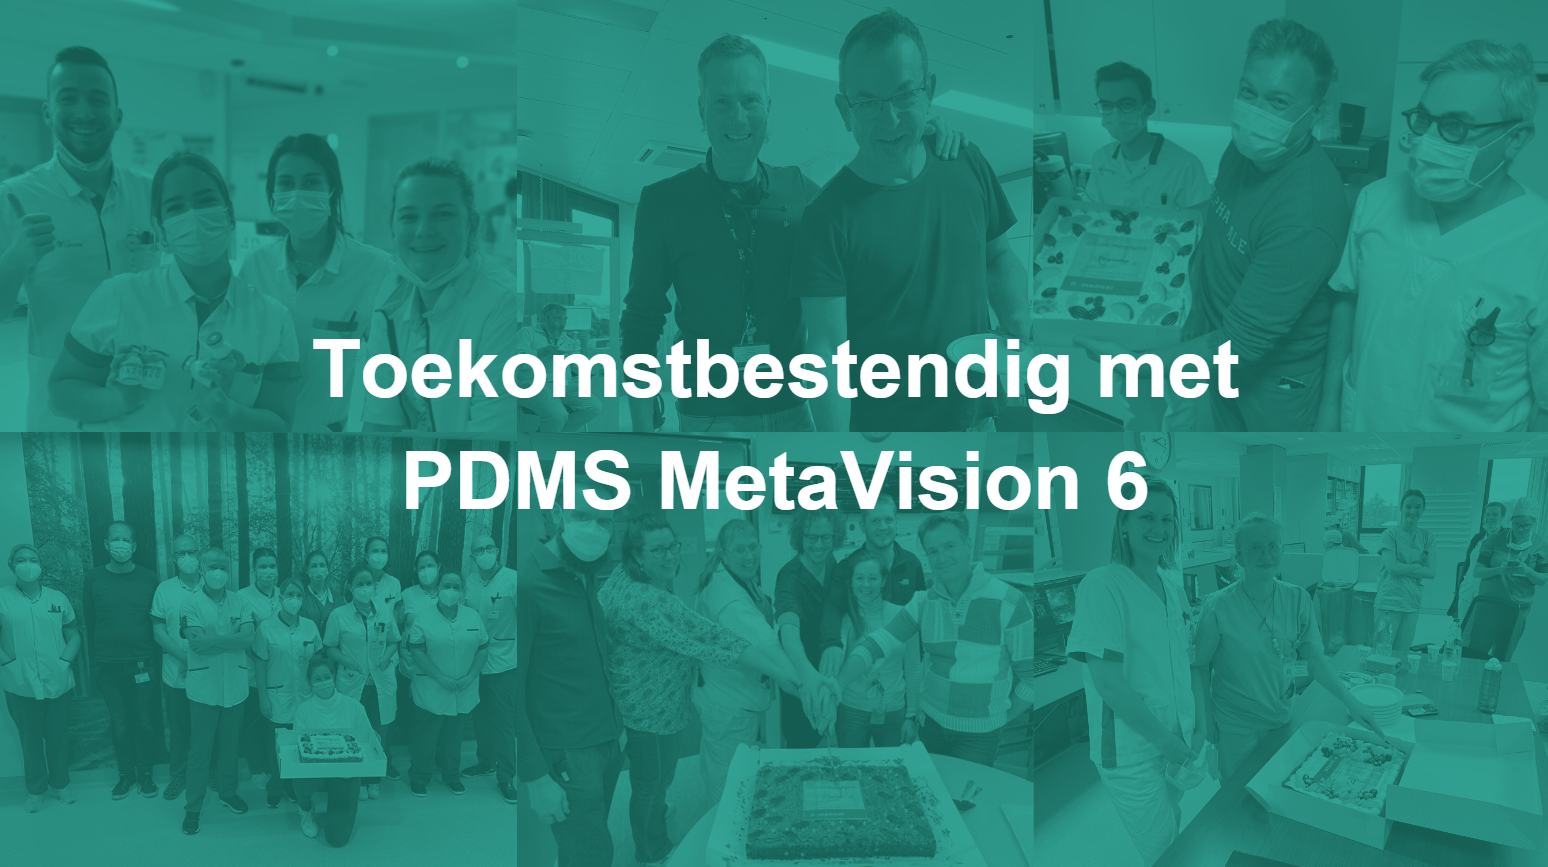 7 partnerziekenhuizen, 7 visies, 1 succesvol upgrade traject naar MetaVision 6